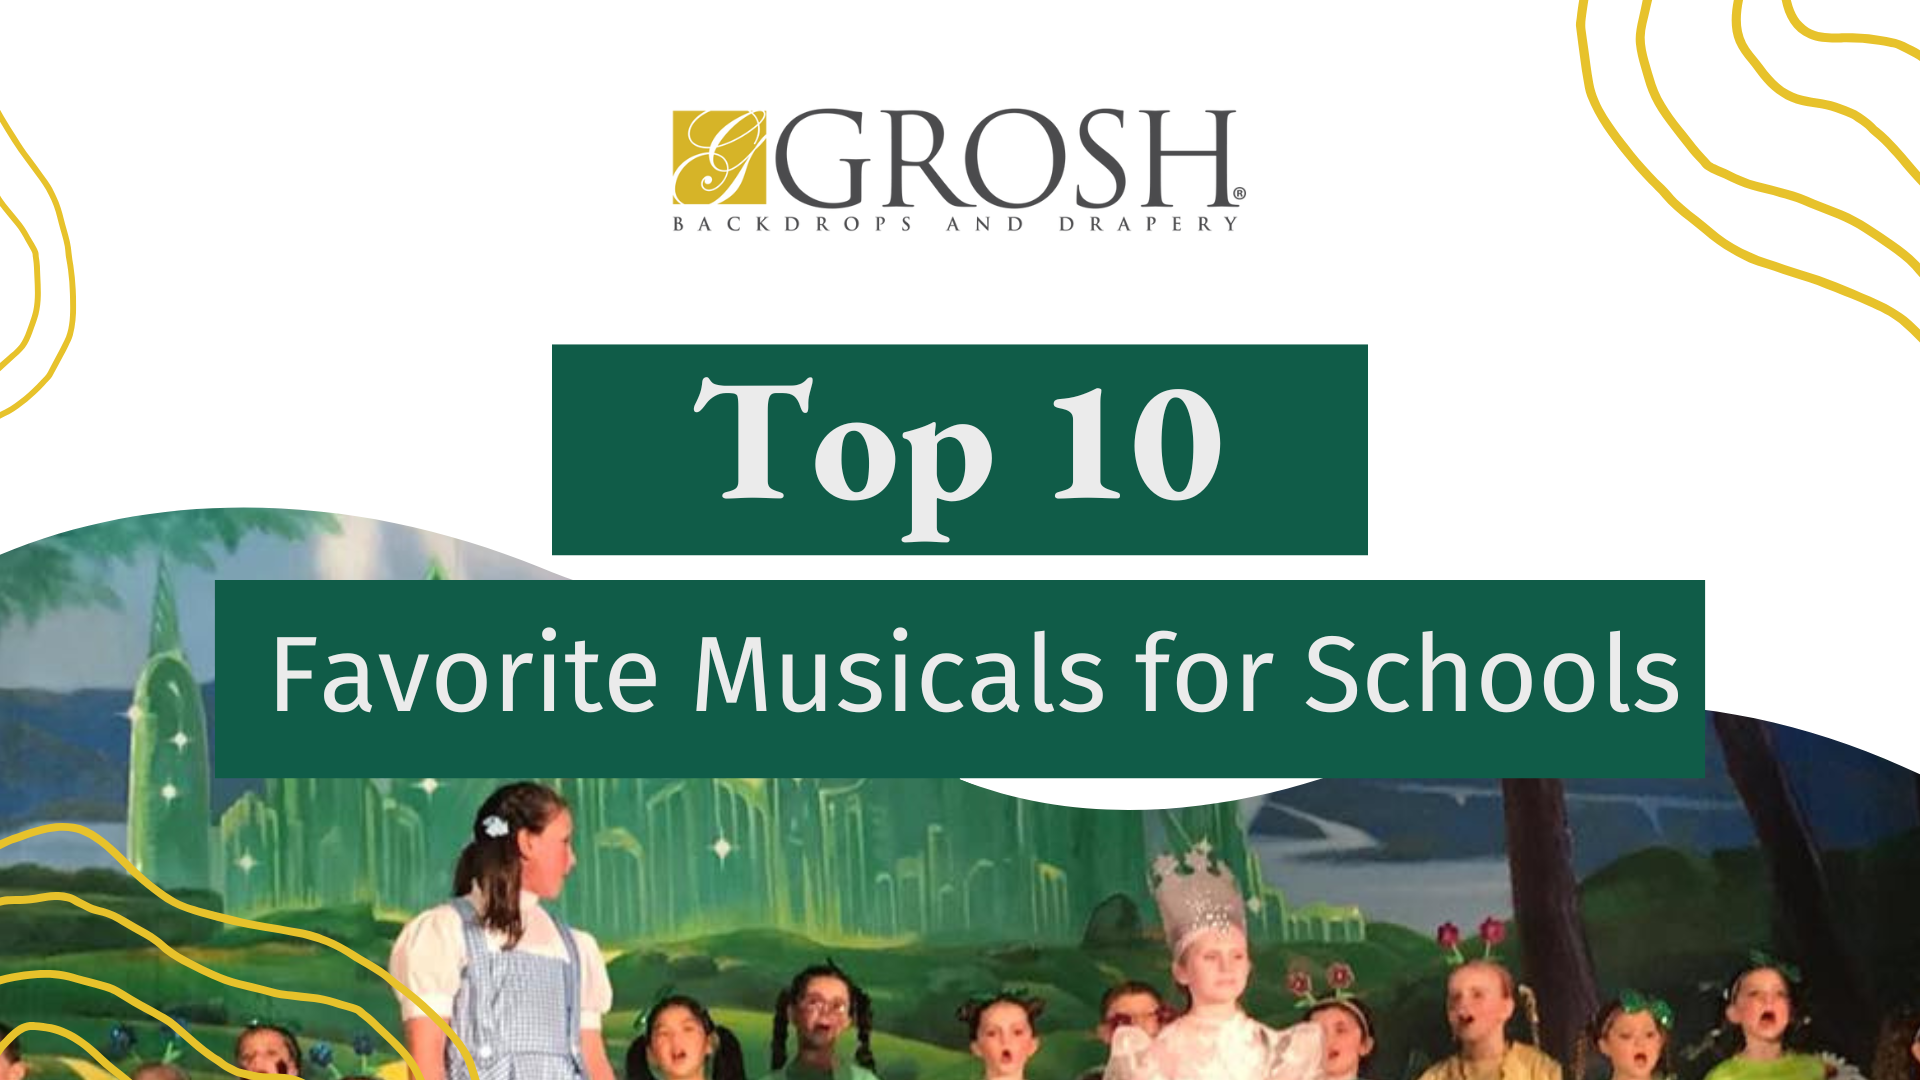 Top 10 Favorite Musicals for Schools